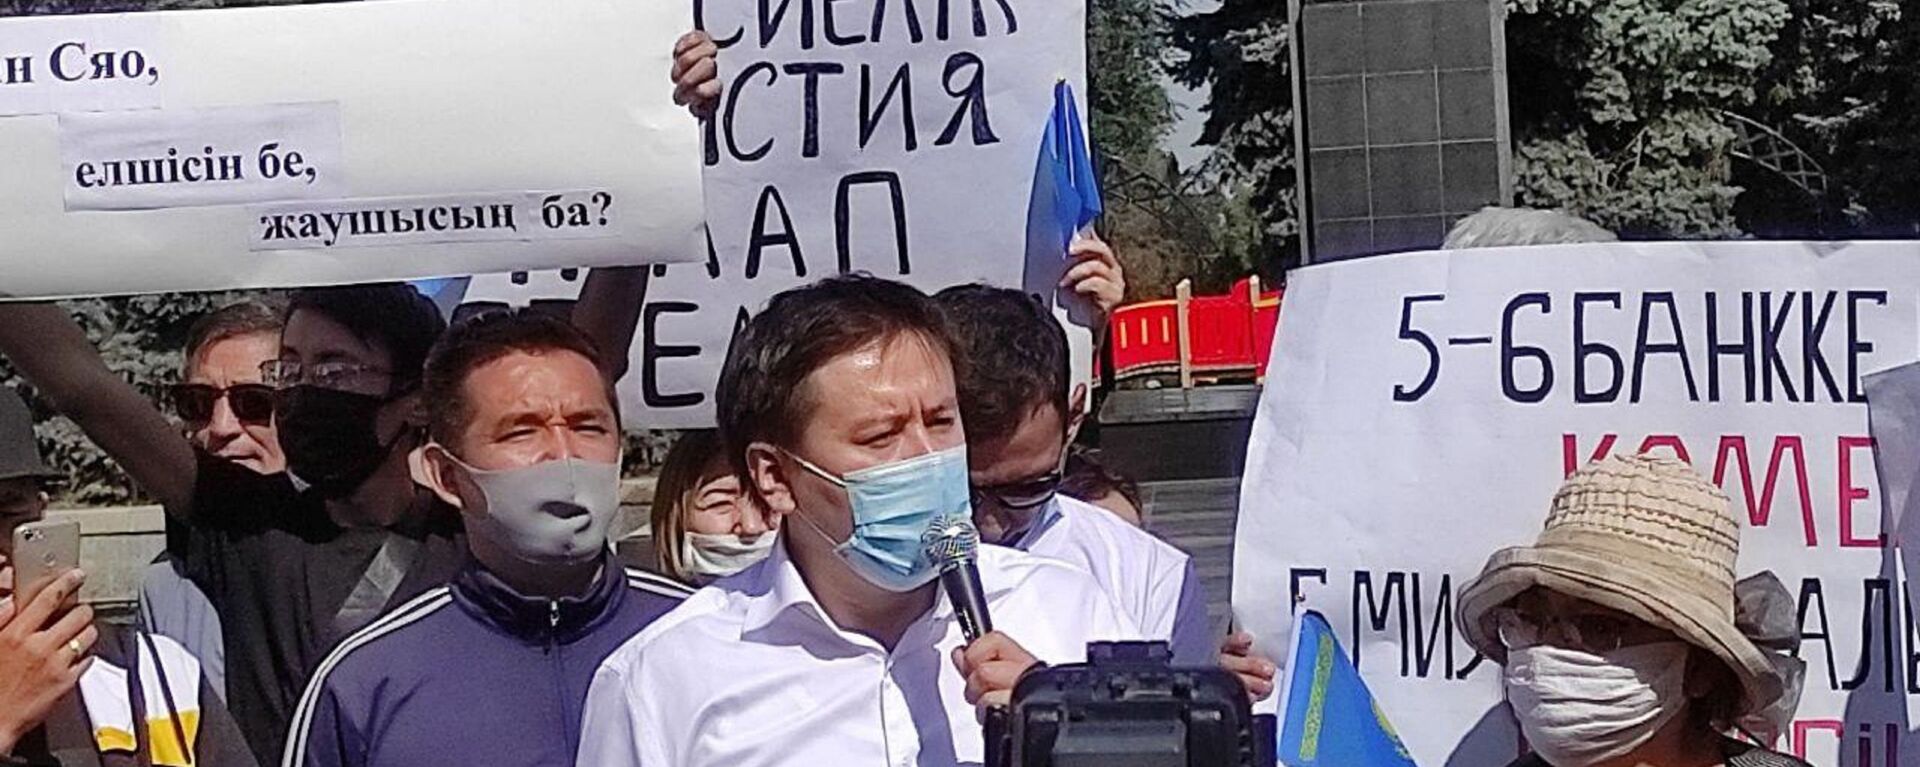 Ранее общественный деятель Жанболат Мамай во главе группы людей пришел к Акорде с петициями о кредитной амнистии - Sputnik Казахстан, 1920, 13.02.2017